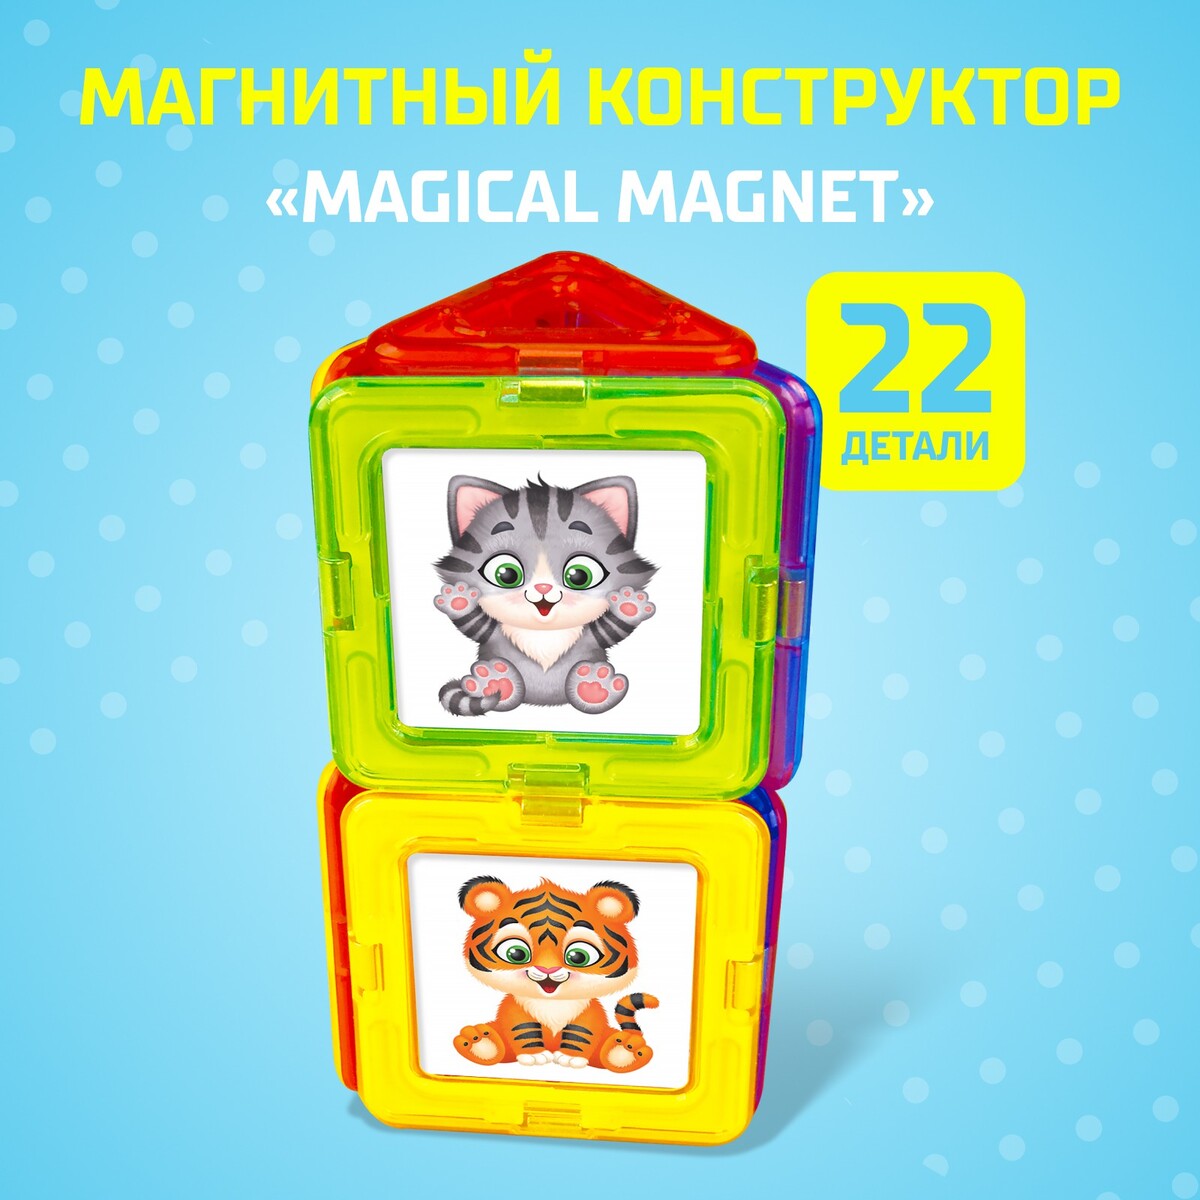 Магнитный конструктор magical magnet, 22 детали, детали матовые блокатор для берета 2 детали d 10 26 см